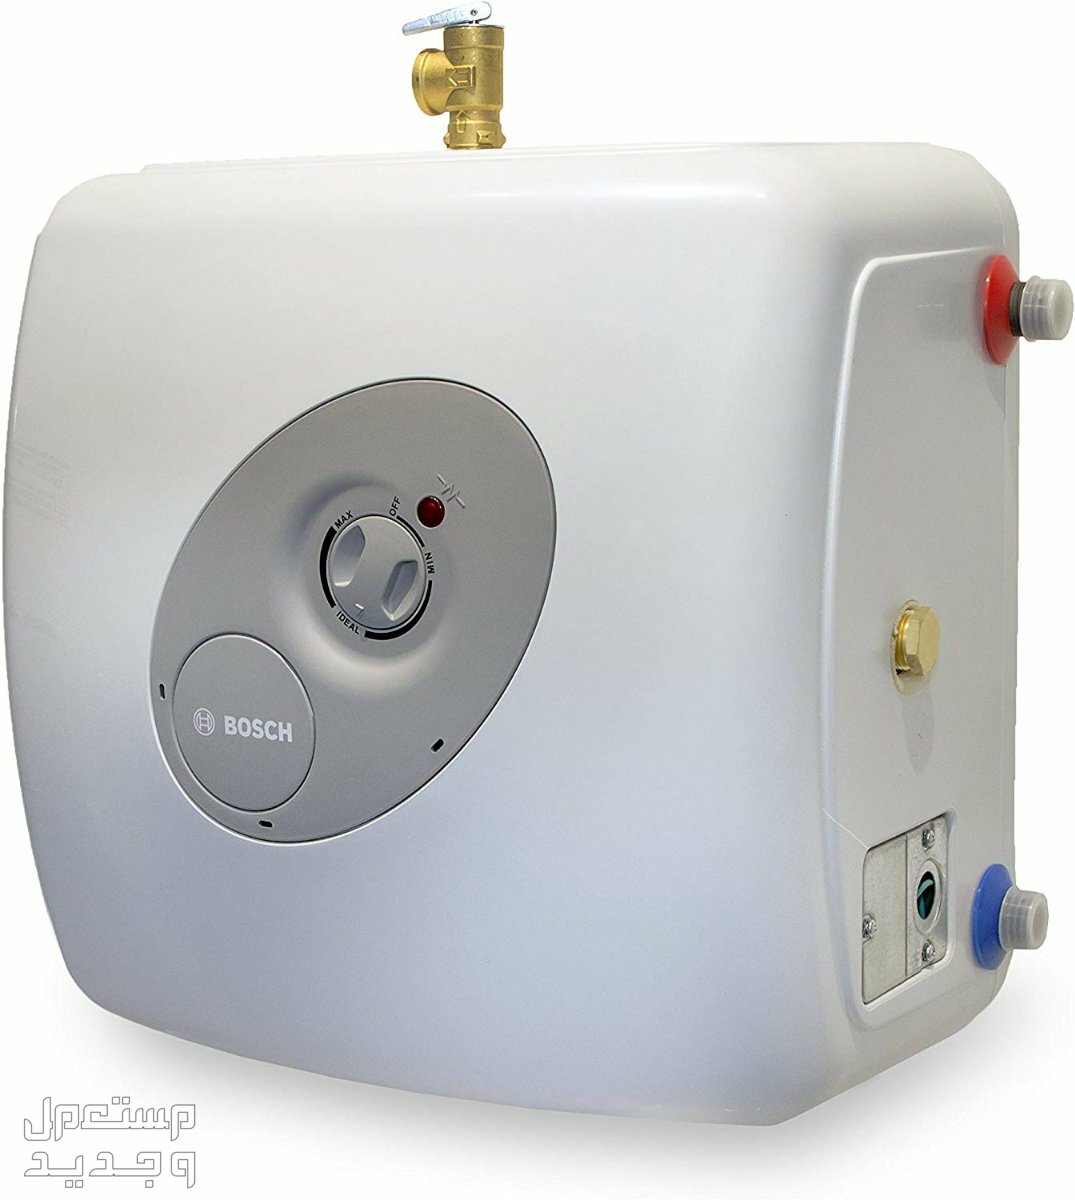 تعرف على أكثر 15 جهاز استهلاكاً للكهرباء في الإمارات العربية المتحدة سخان الماء الكهربائي Heater